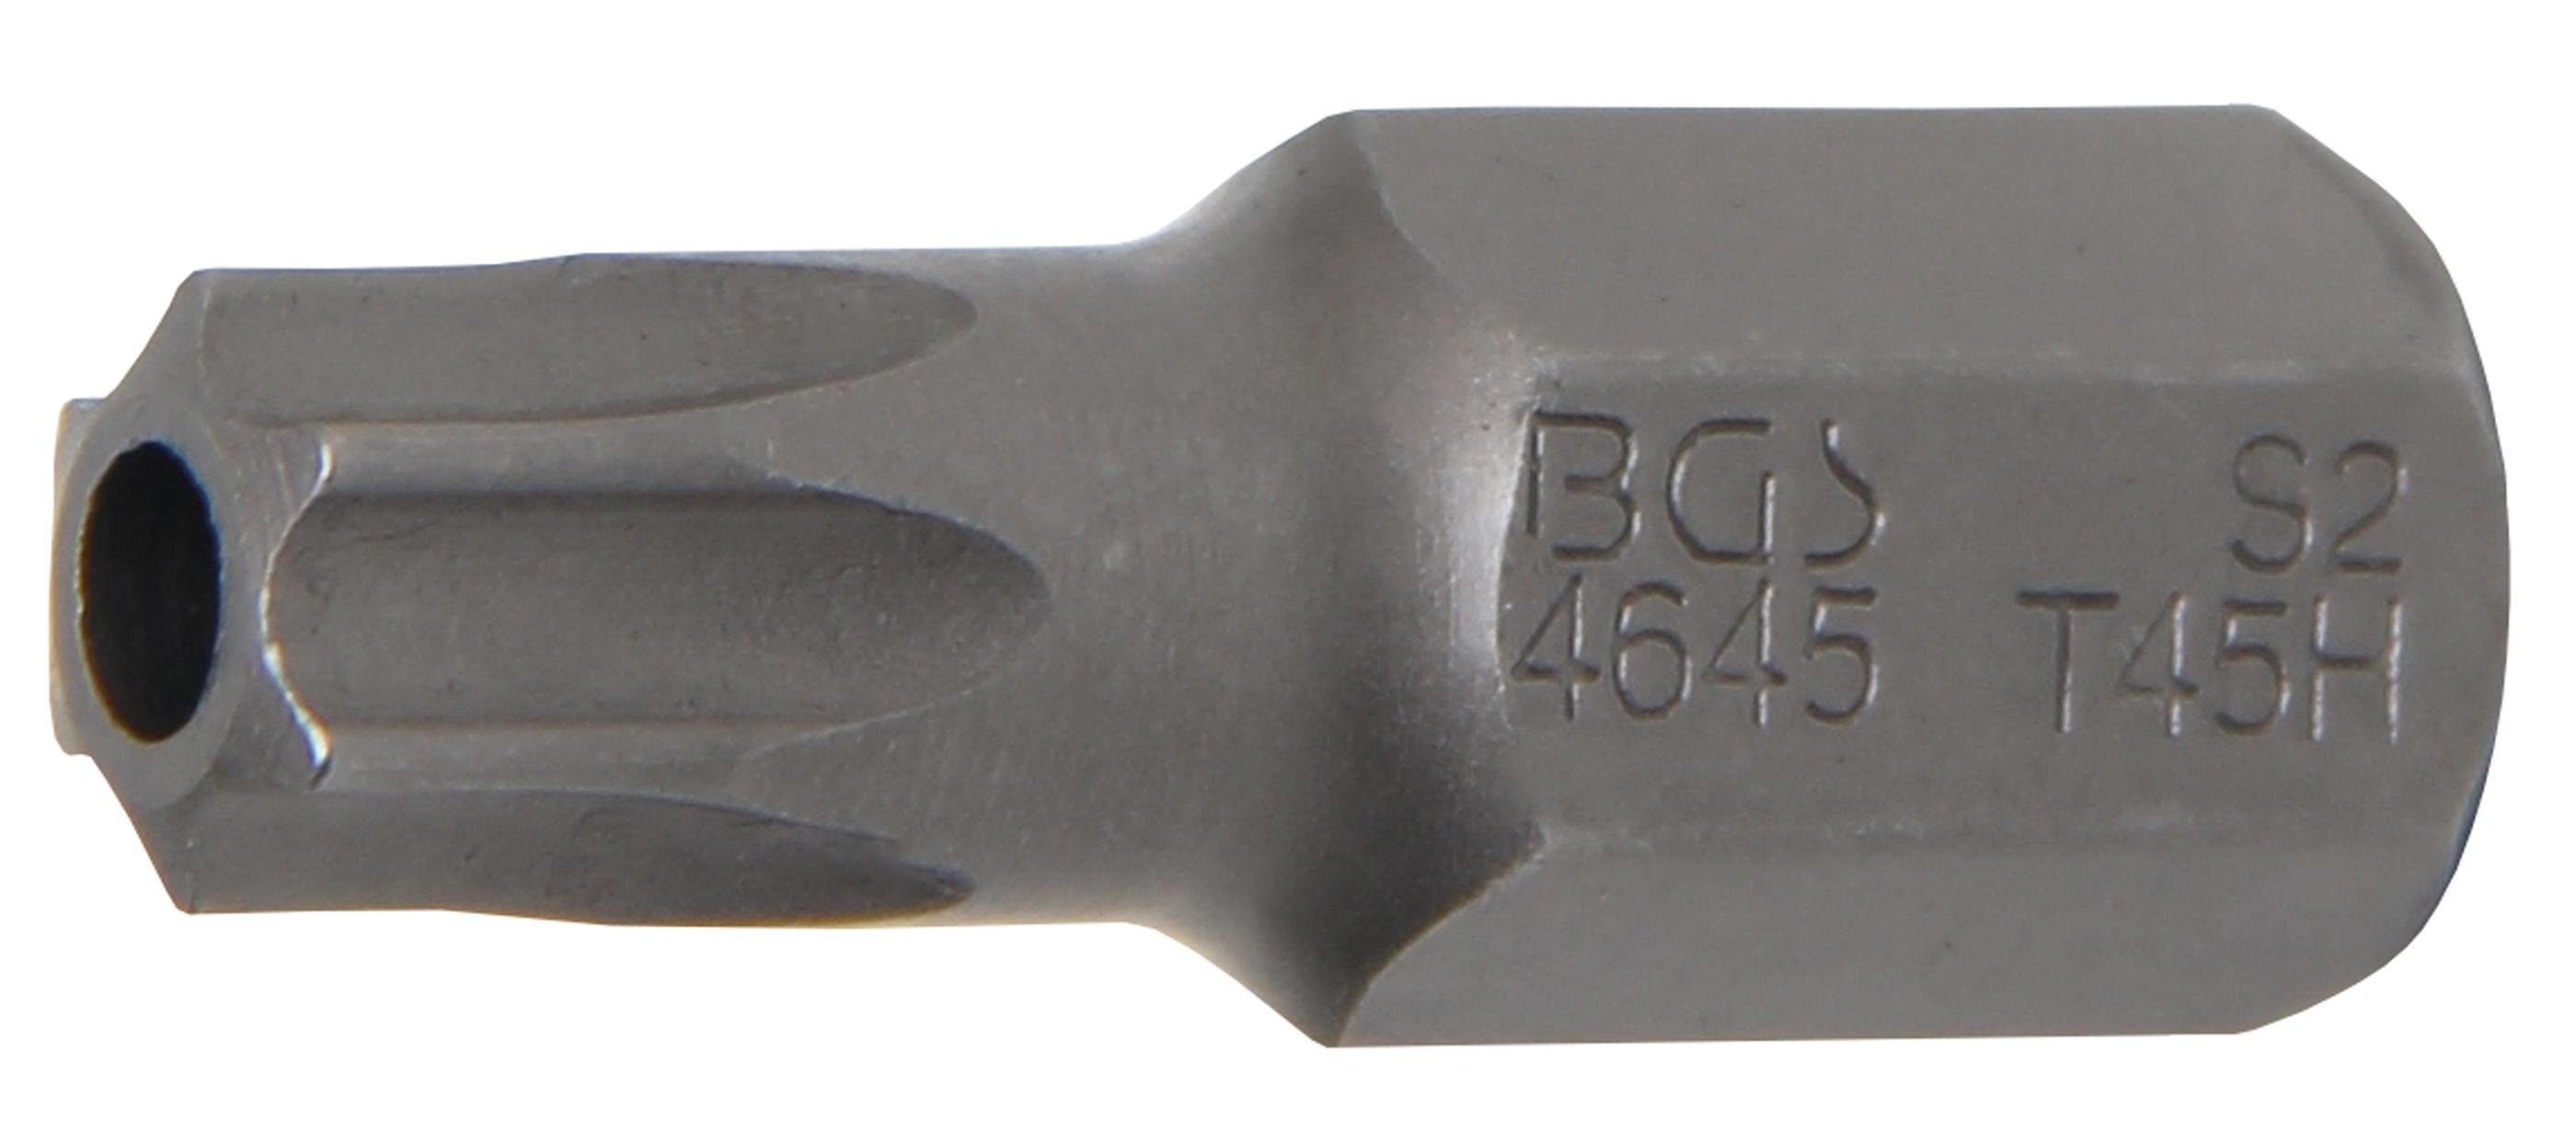 BGS technic Bit-Schraubendreher Bit, Länge 30 mm, Antrieb Außensechskant 10 mm (3/8), T-Profil (für Torx) mit Bohrung T45